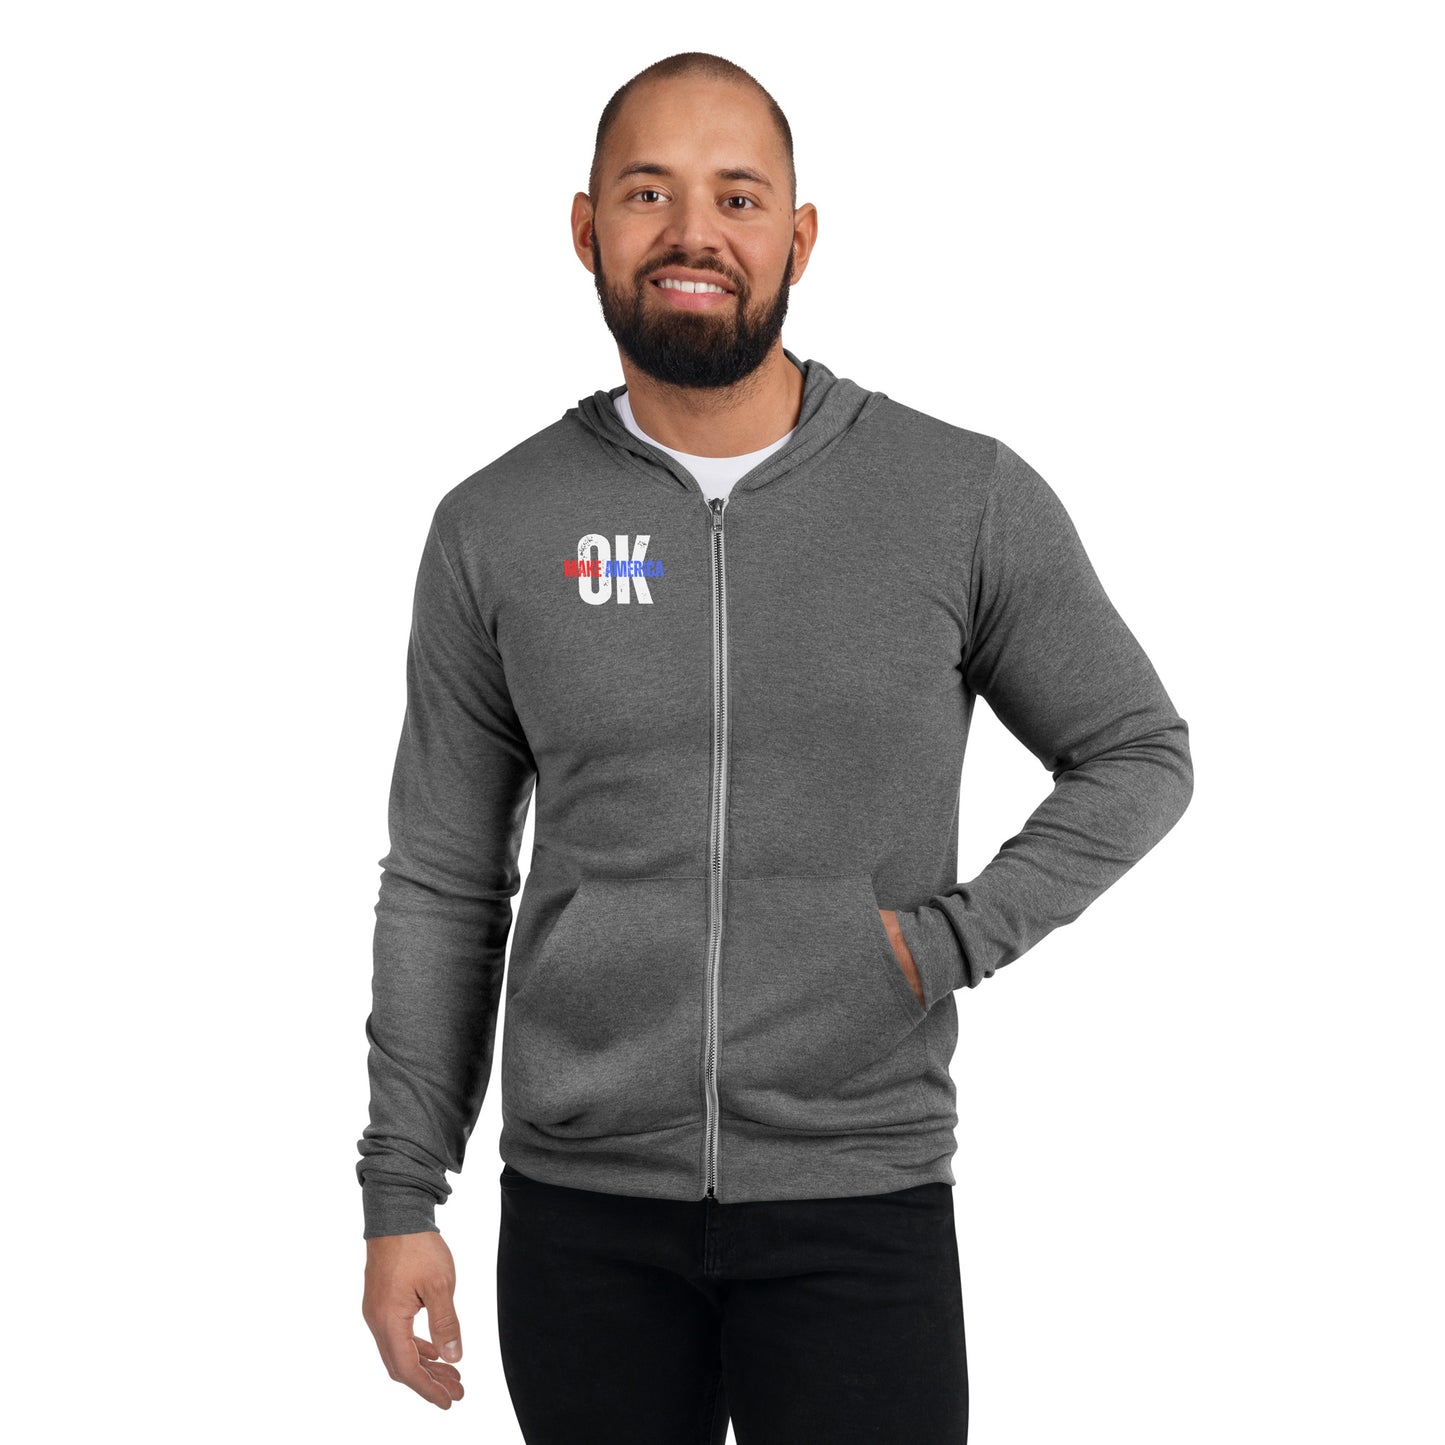 Make America OK Unisex zip hoodie